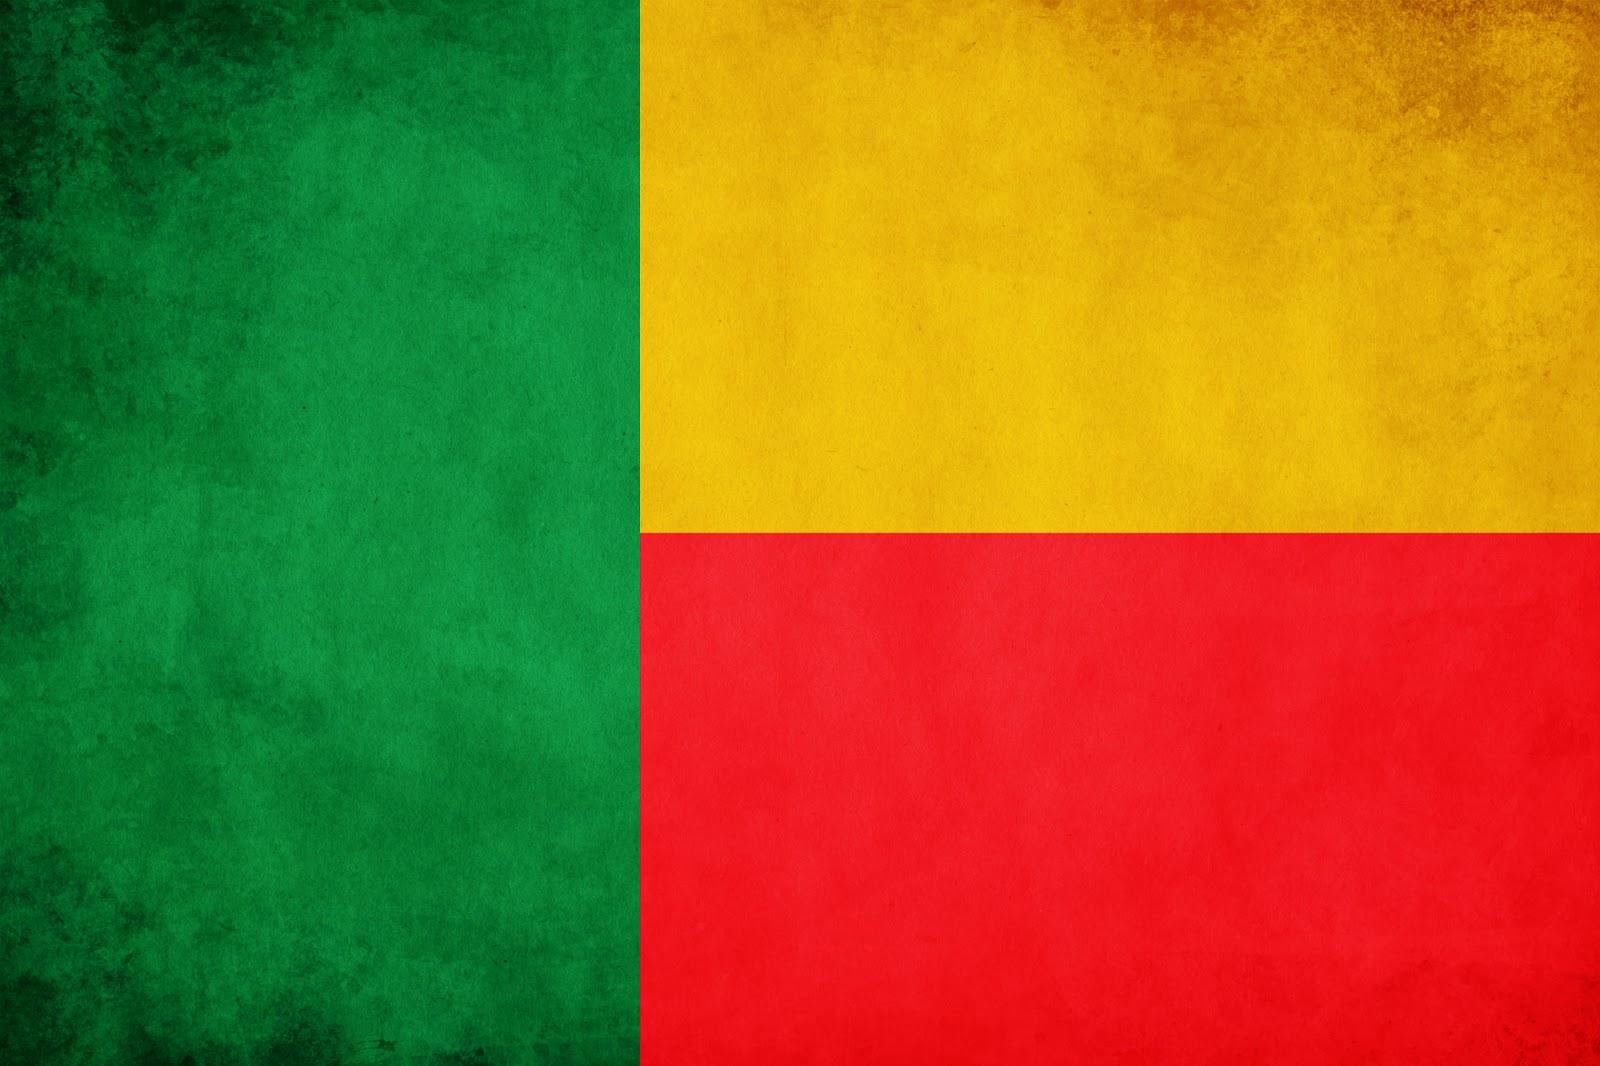 Graafix!: Flag of Benin